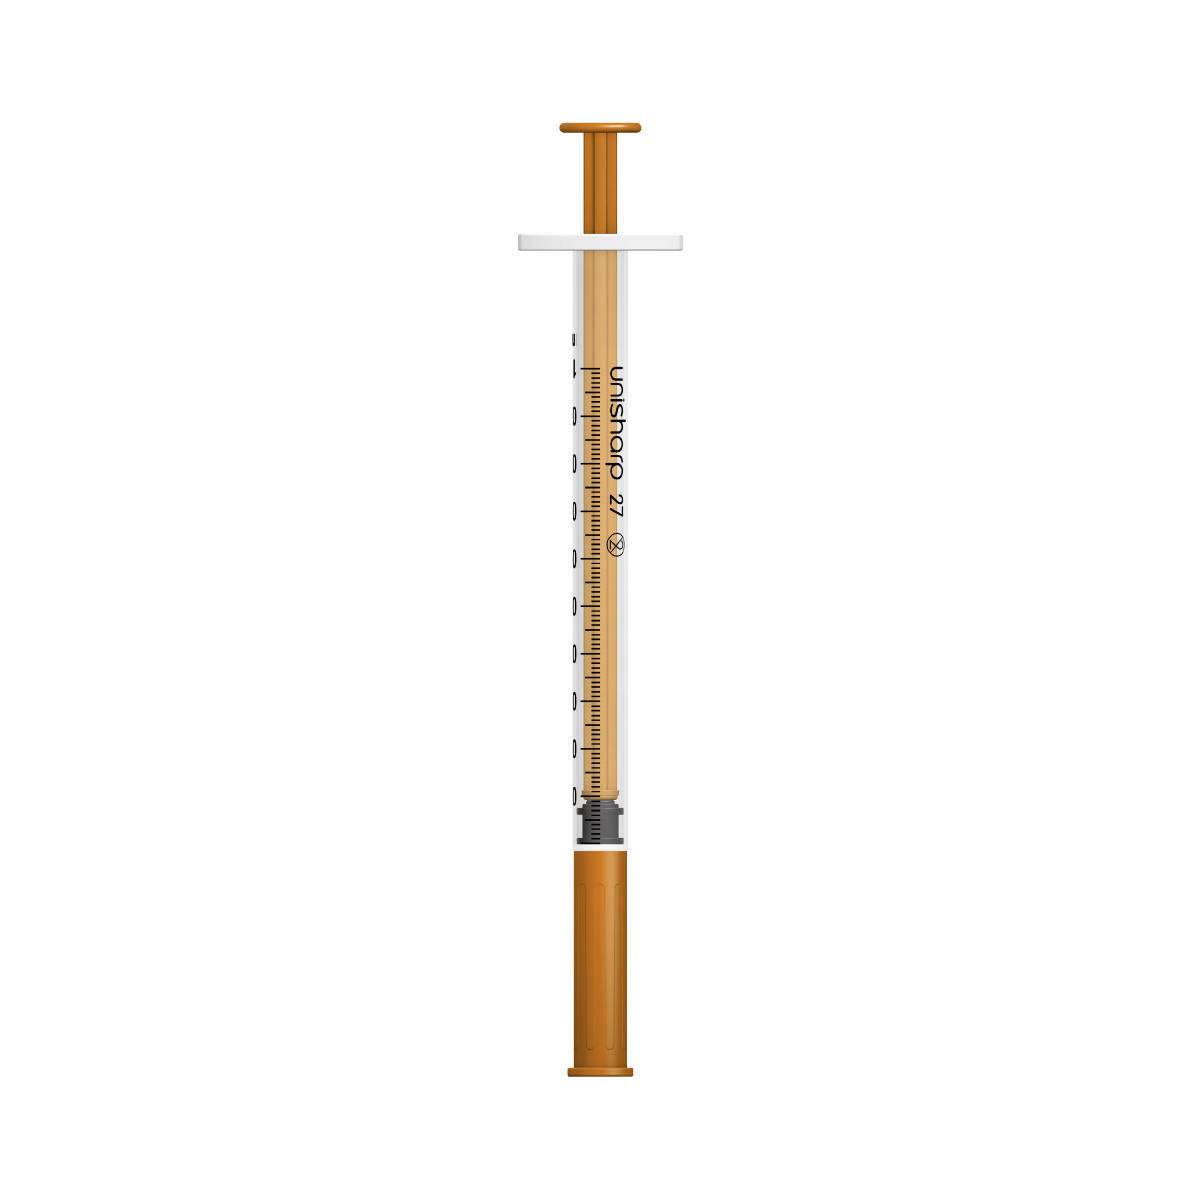 1ml 0.5 inch 27g Orange Unisharp Syringe and Needle u100 - UKMEDI